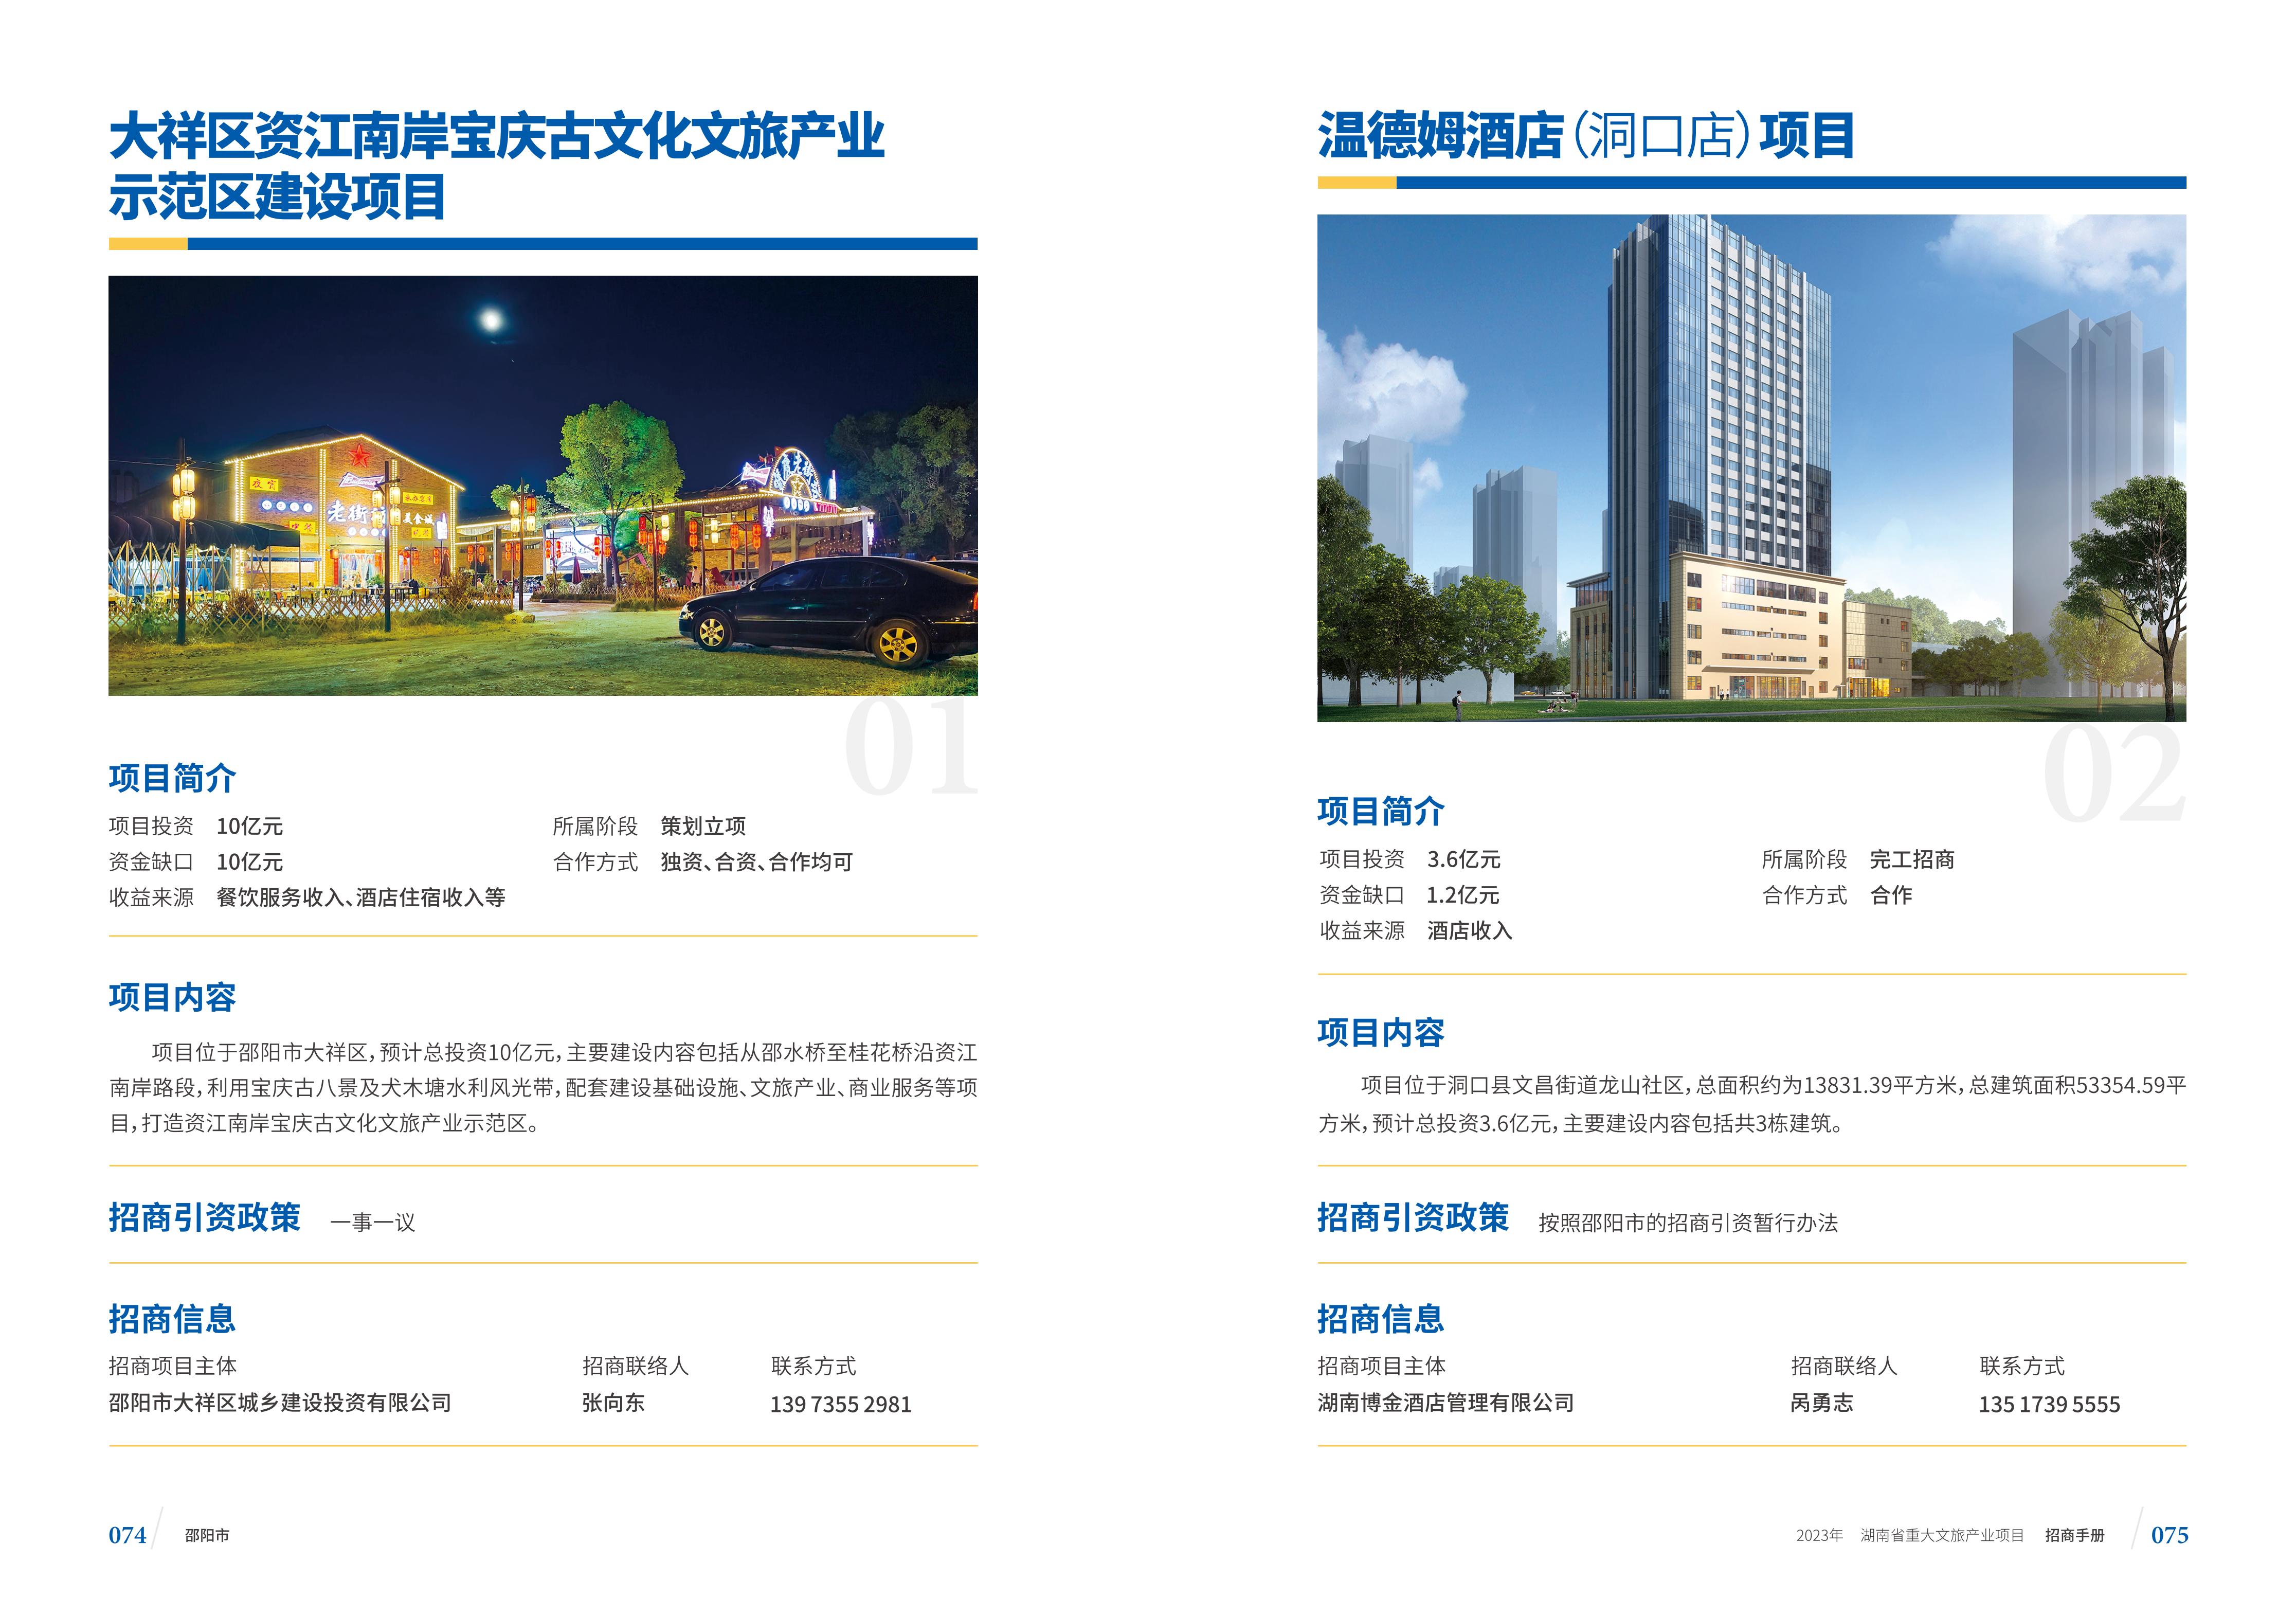 湖南省重大文旅产业项目招手册线上链接版_45.jpg